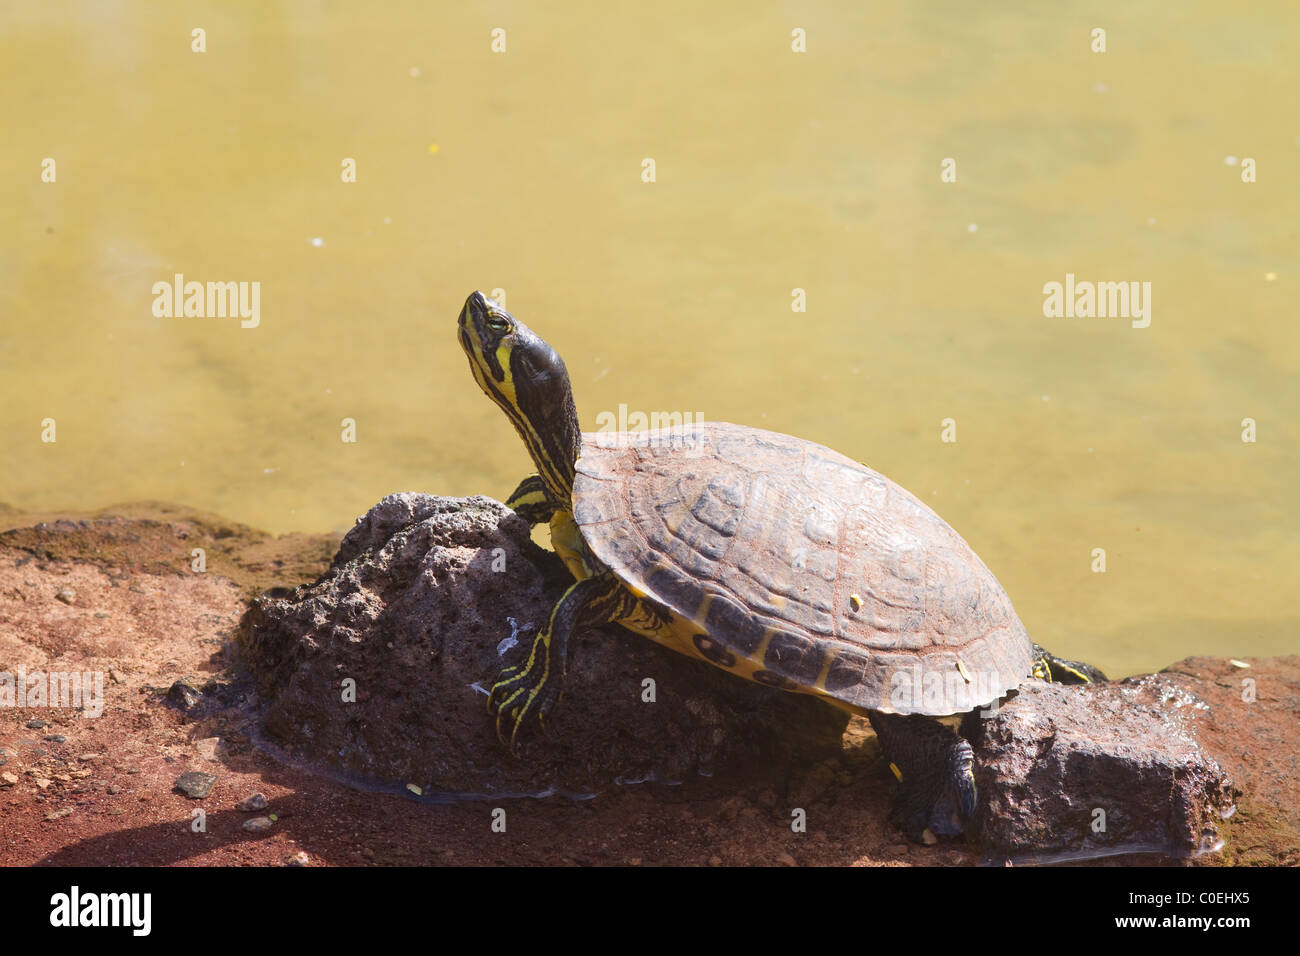 Reptiles aquatiques Terrapin reposant sur un rocher Banque D'Images